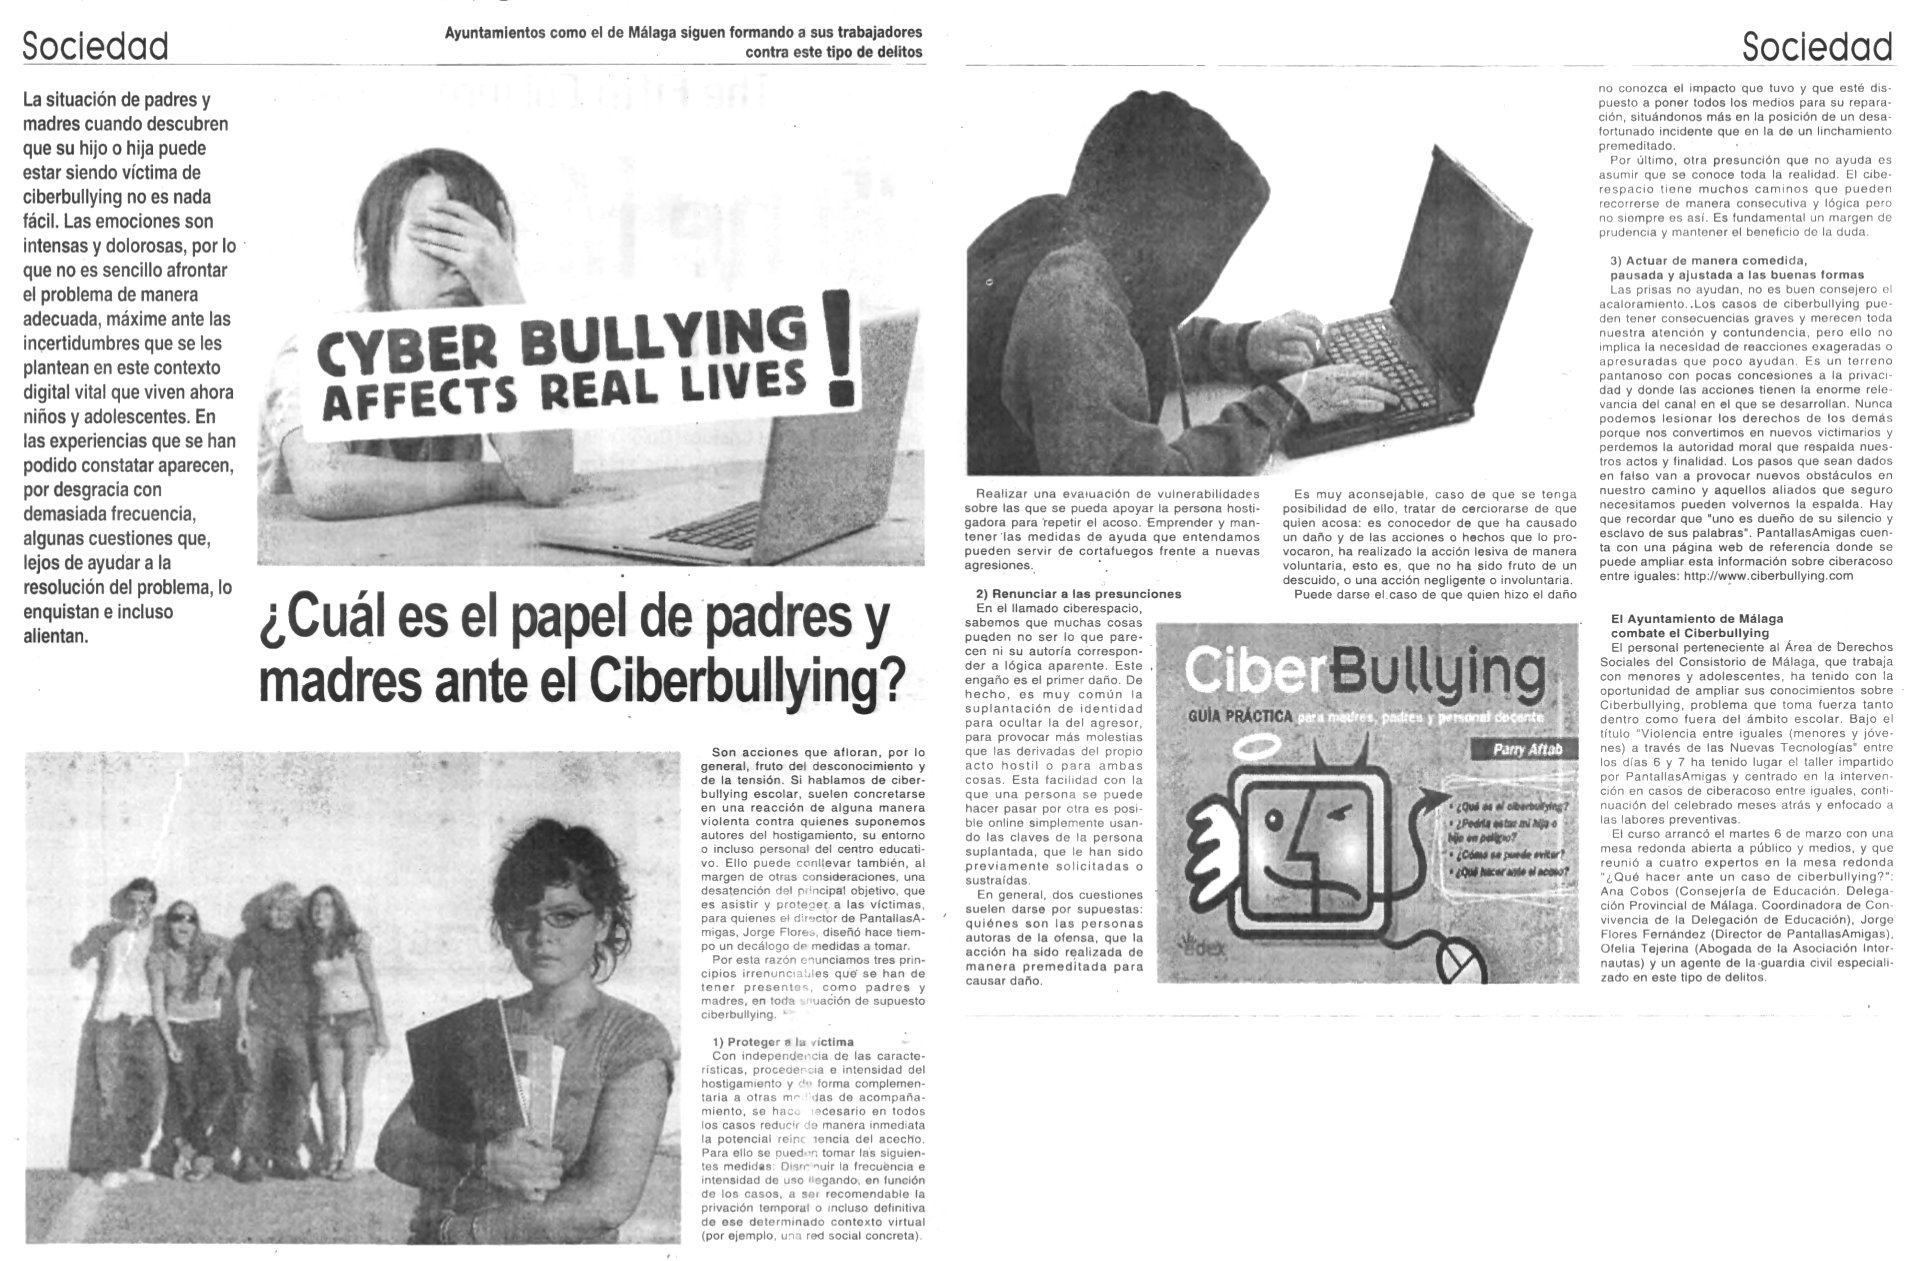 ¿Cuál es el papel de madres y padres ante el Ciberbullying?